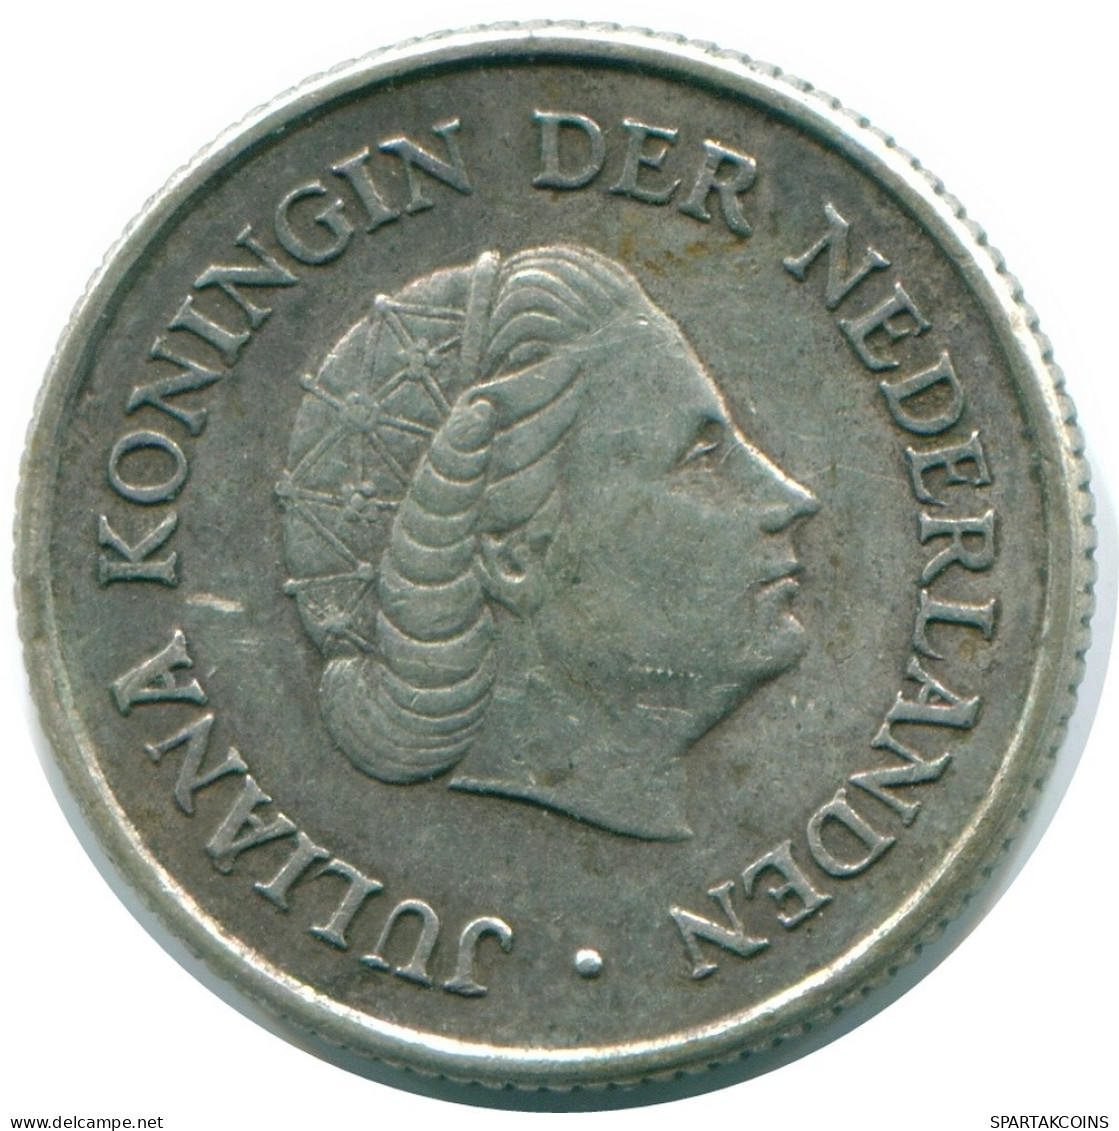 1/4 GULDEN 1960 NIEDERLÄNDISCHE ANTILLEN SILBER Koloniale Münze #NL11063.4.D.A - Antilles Néerlandaises